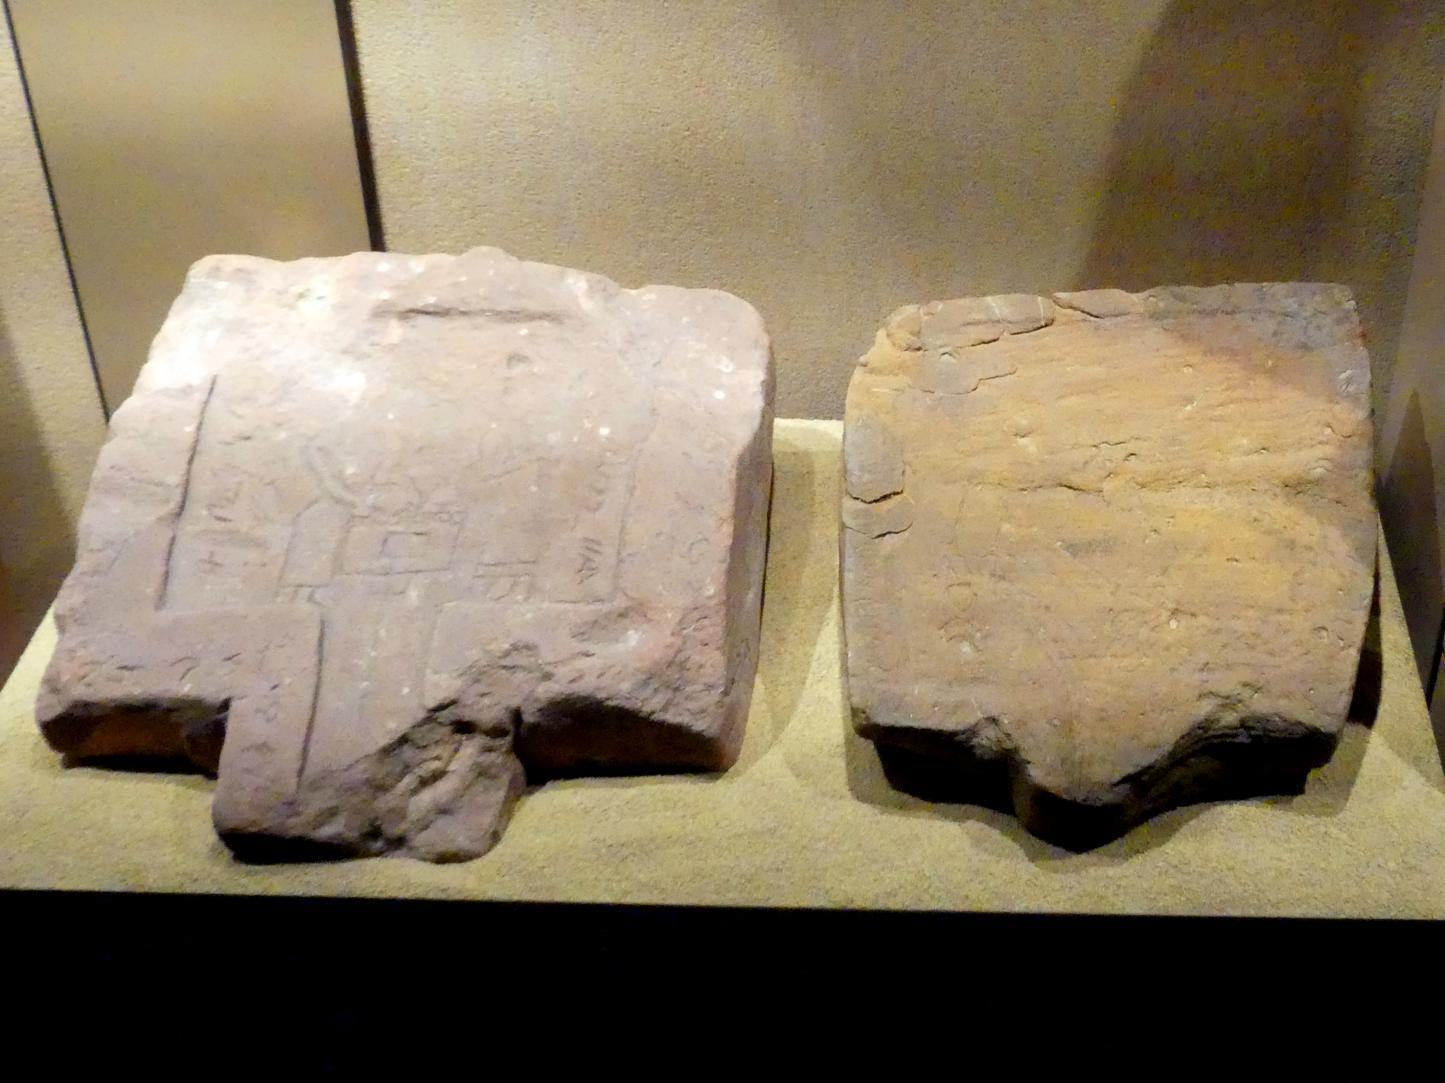 Zwei Opferplatten mit Opferszenen und Inschrift, Meroitische Zeit, 200 v. Chr. - 500 n. Chr., 1 - 100, Bild 1/2